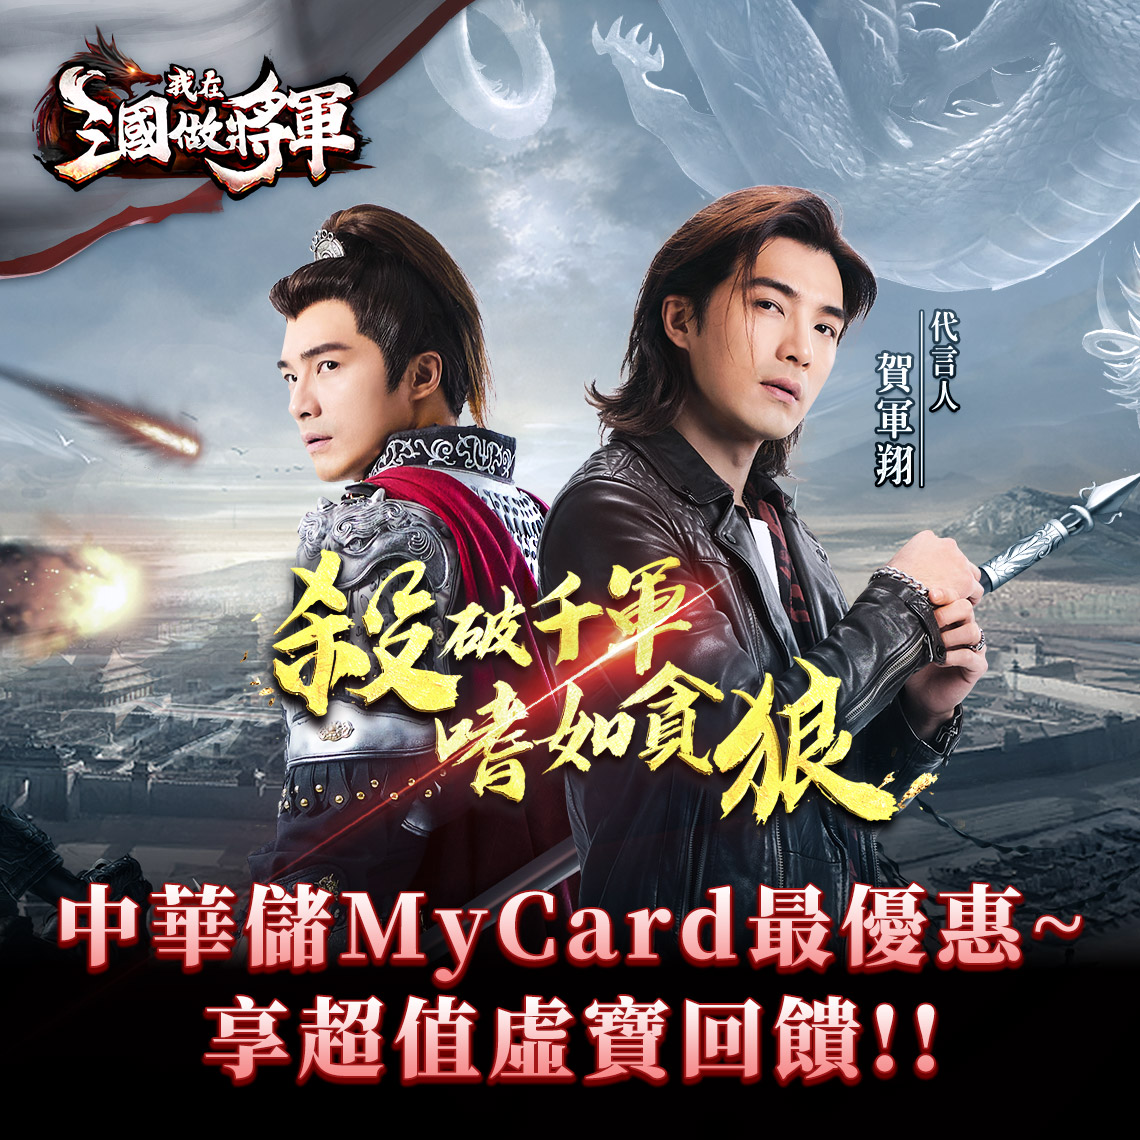   《我在三國做將軍》MyCard儲值享超值好禮回饋 | 中華電信